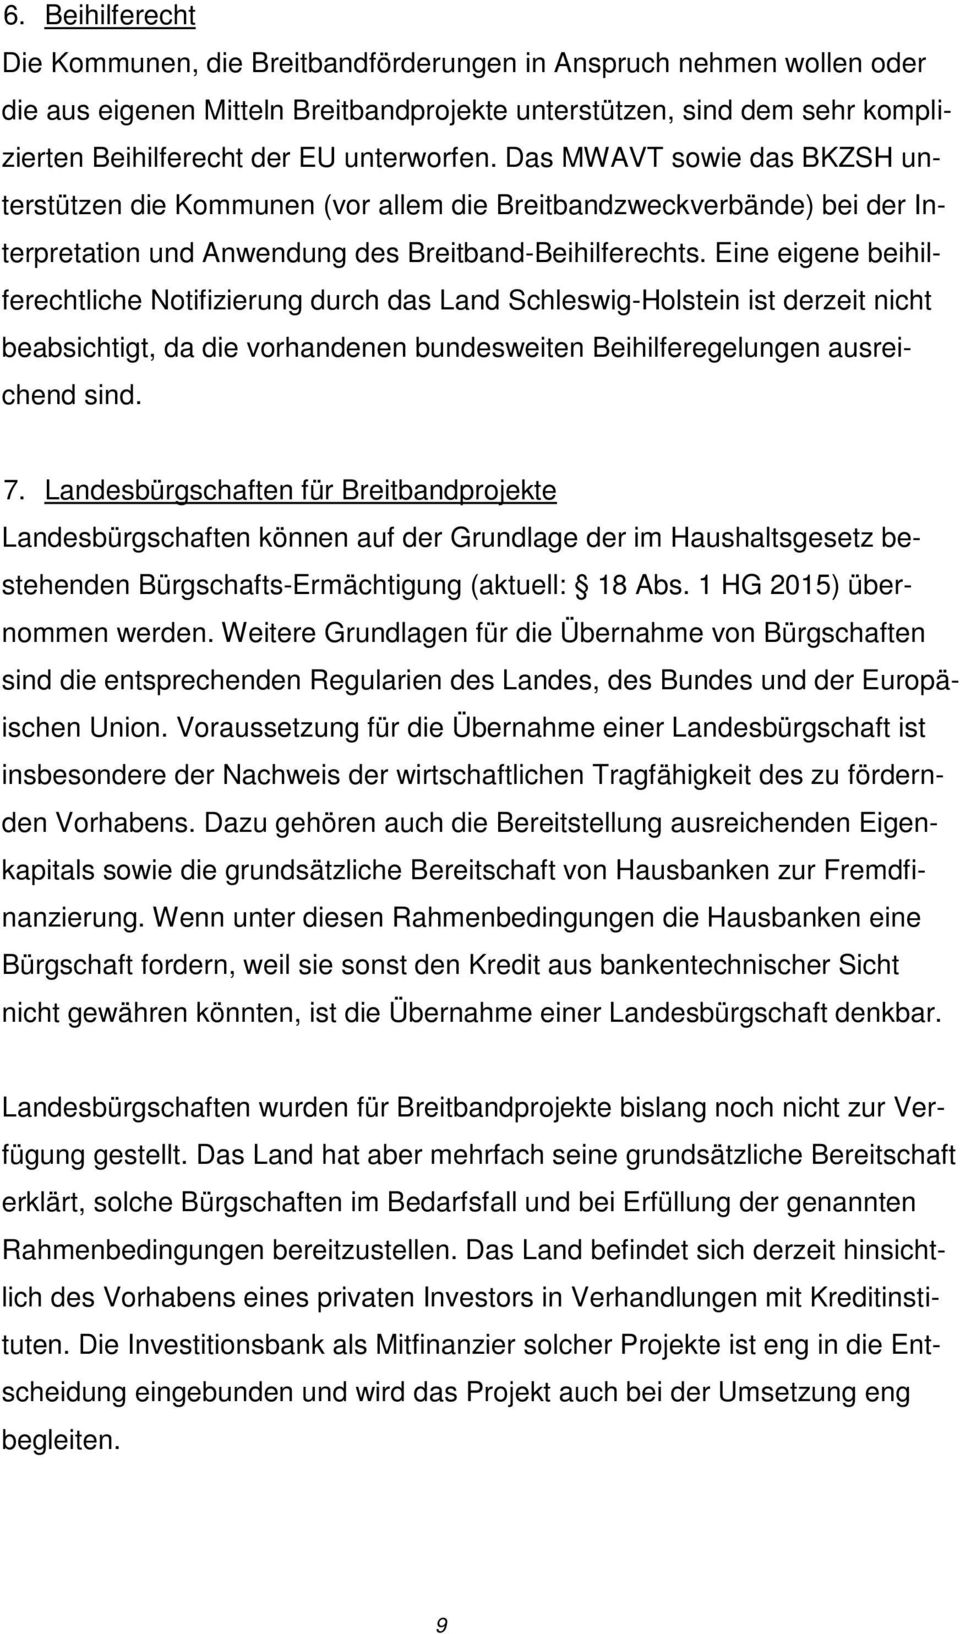 Eine eigene beihilferechtliche Notifizierung durch das Land Schleswig-Holstein ist derzeit nicht beabsichtigt, da die vorhandenen bundesweiten Beihilferegelungen ausreichend sind. 7.